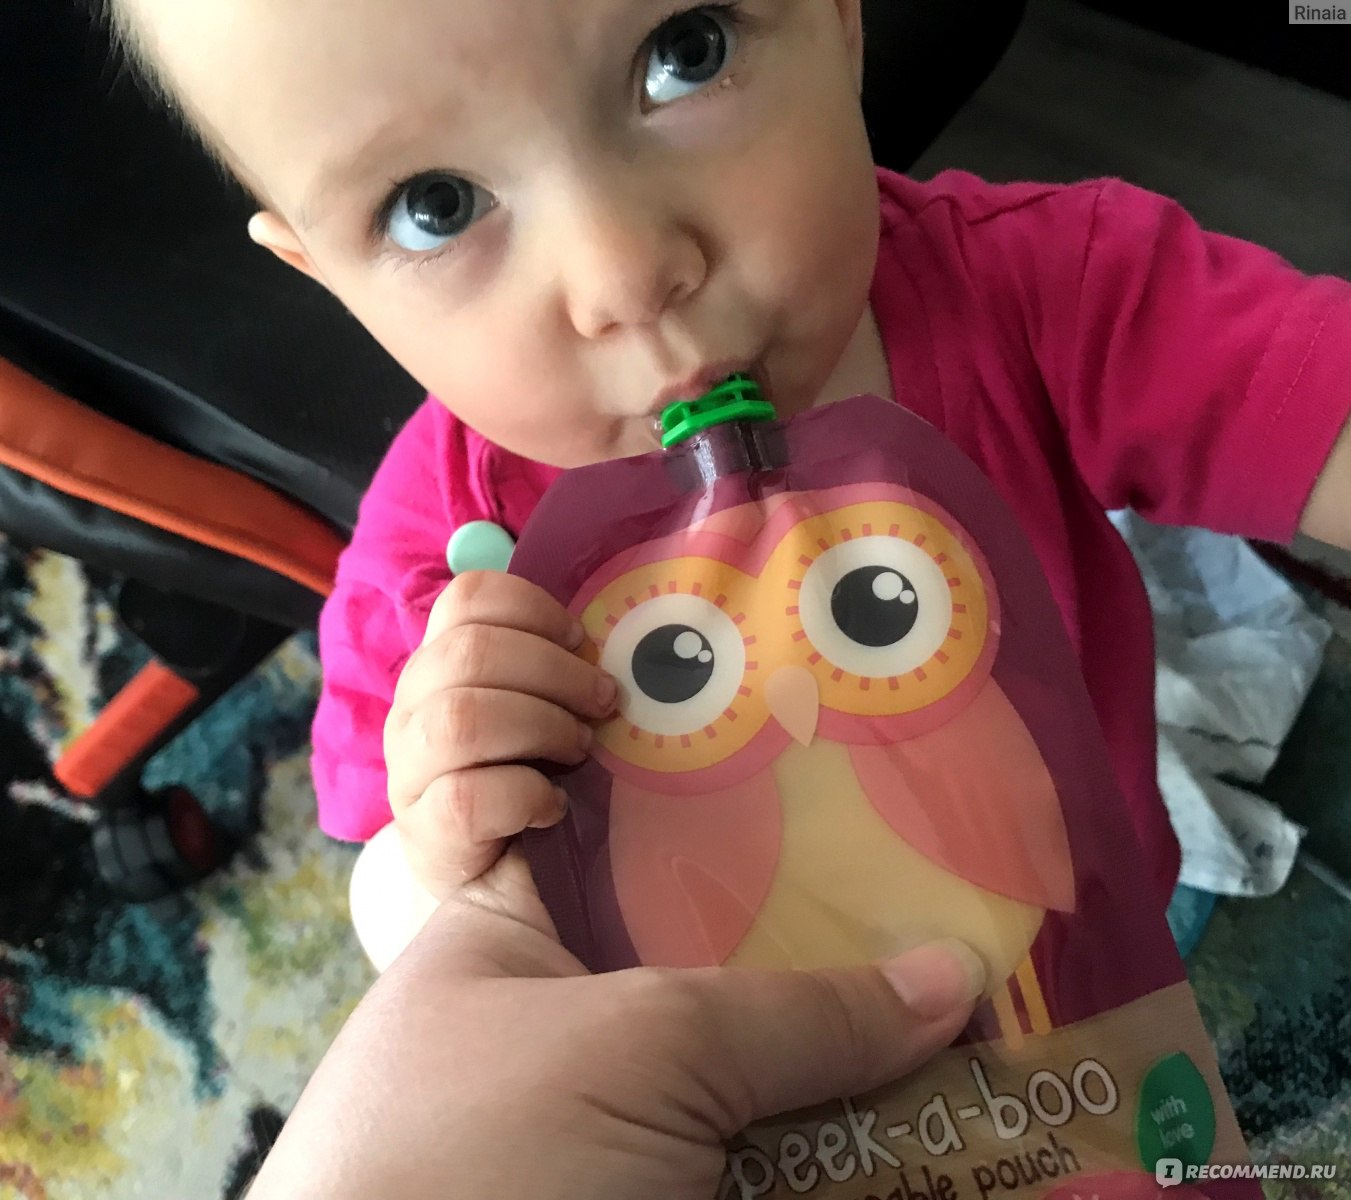 Многоразовые паучи Peek-a-boo Контейнеры для хранения детского питания и кормления фото